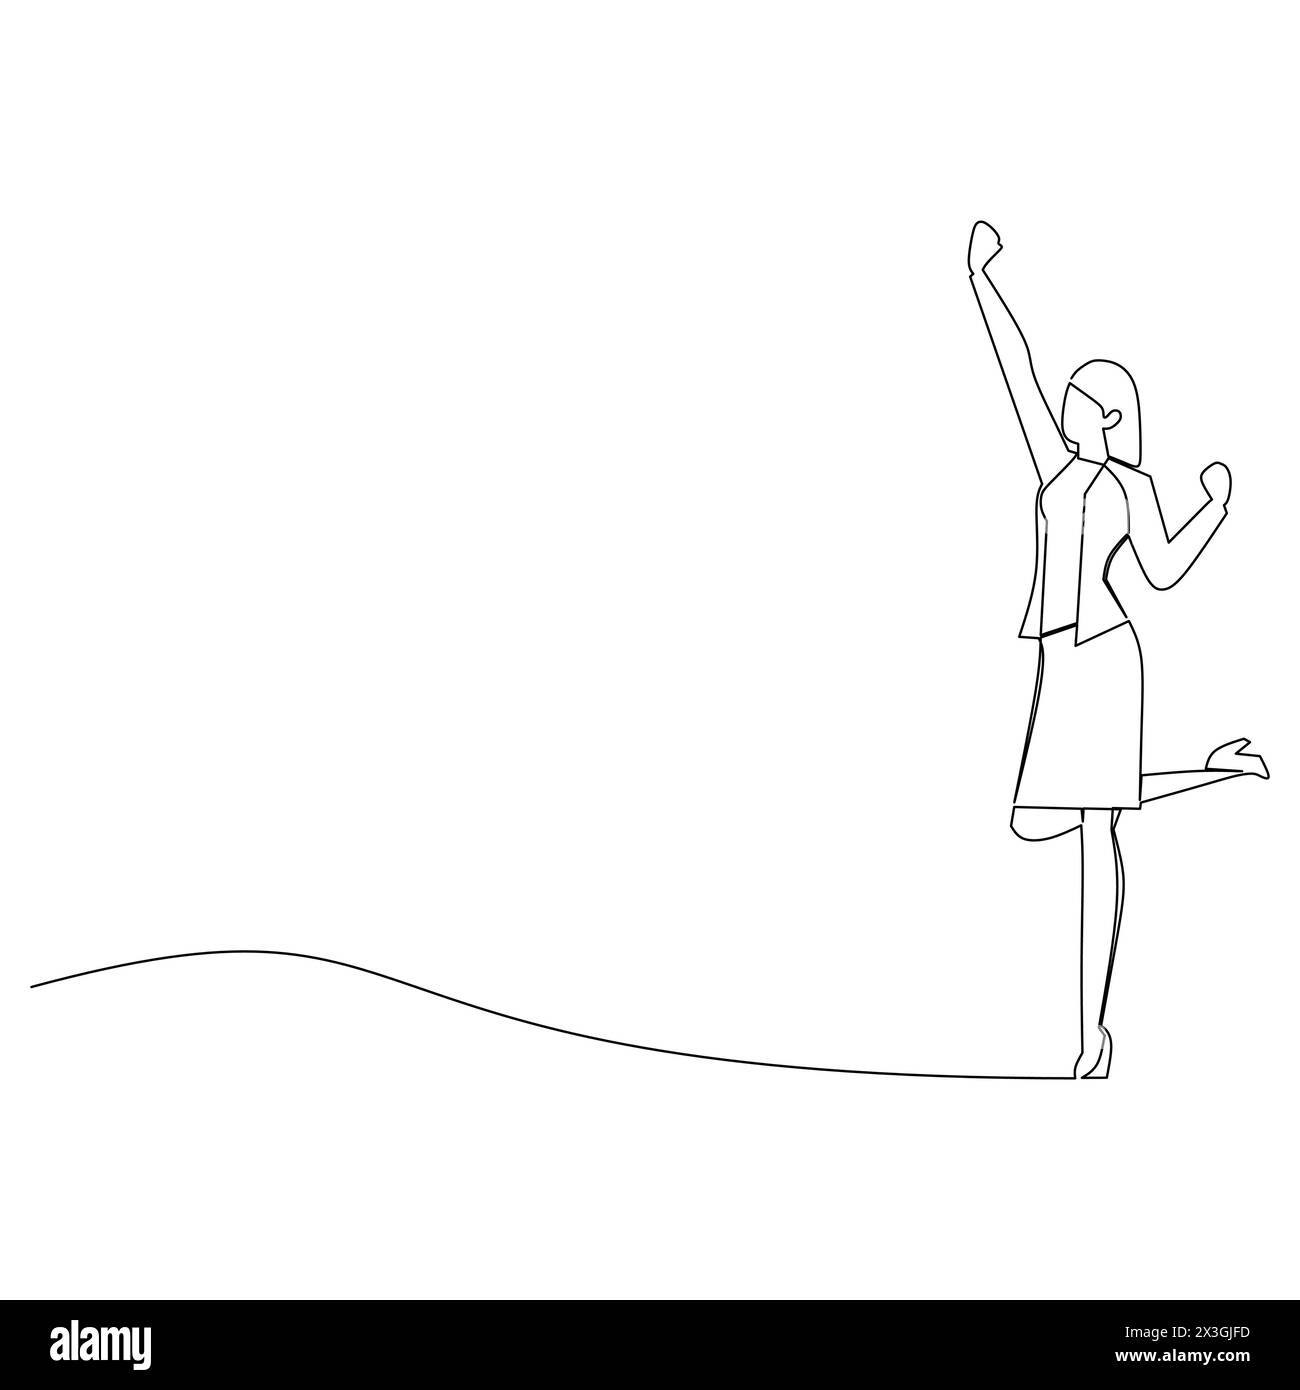 Fortlaufende Linienzeichnung einer Frau, die ihre Hand zum Himmel hebt. Erfolgreiche Mitarbeiter im Bereich Business Conceptual Design. Stock Vektor